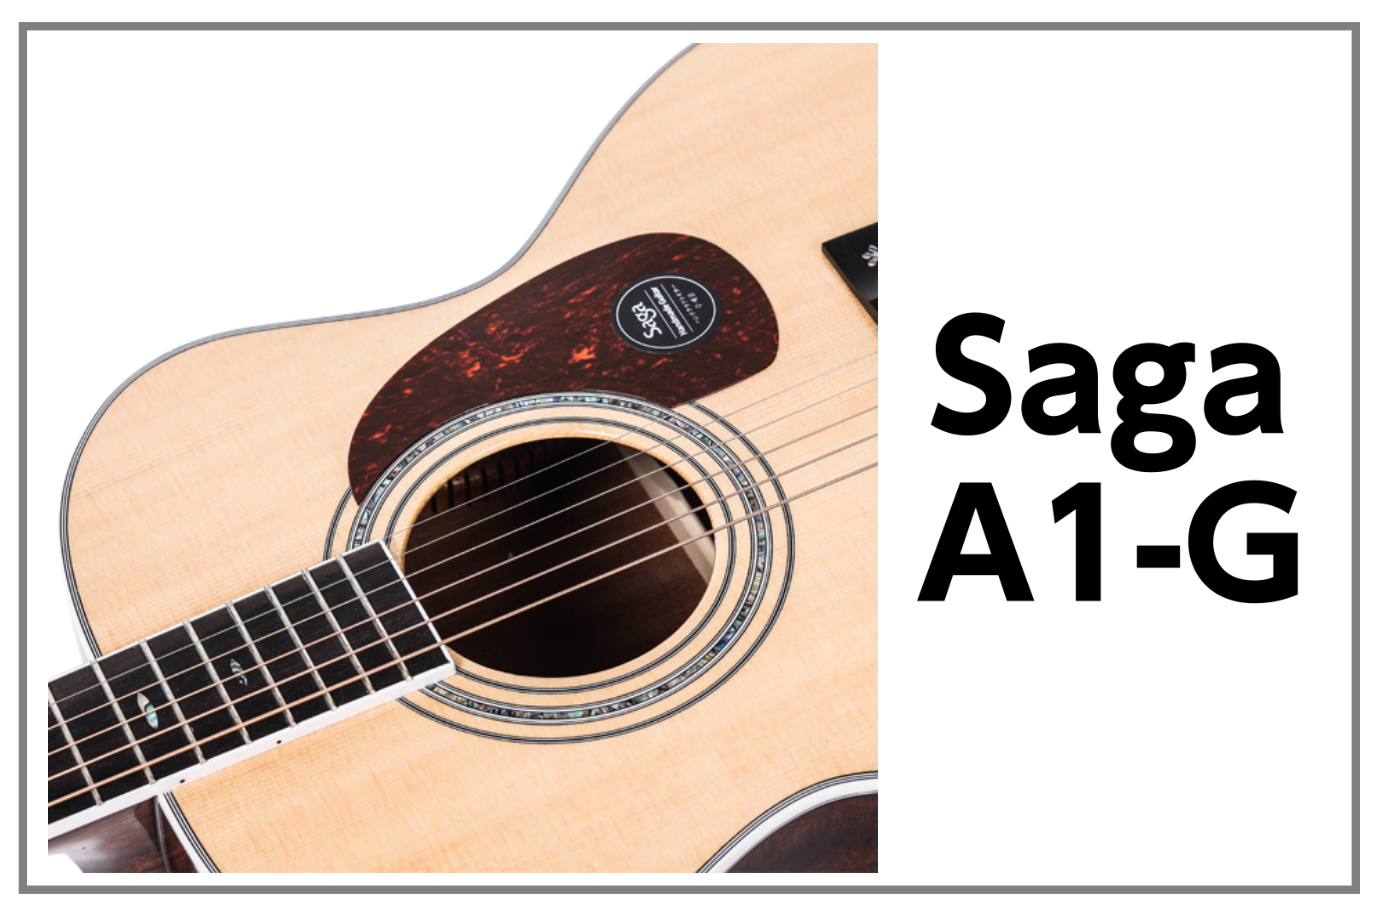 Saga A1-G入荷！ 【アコースティックギター】｜島村楽器 イオンモール ...